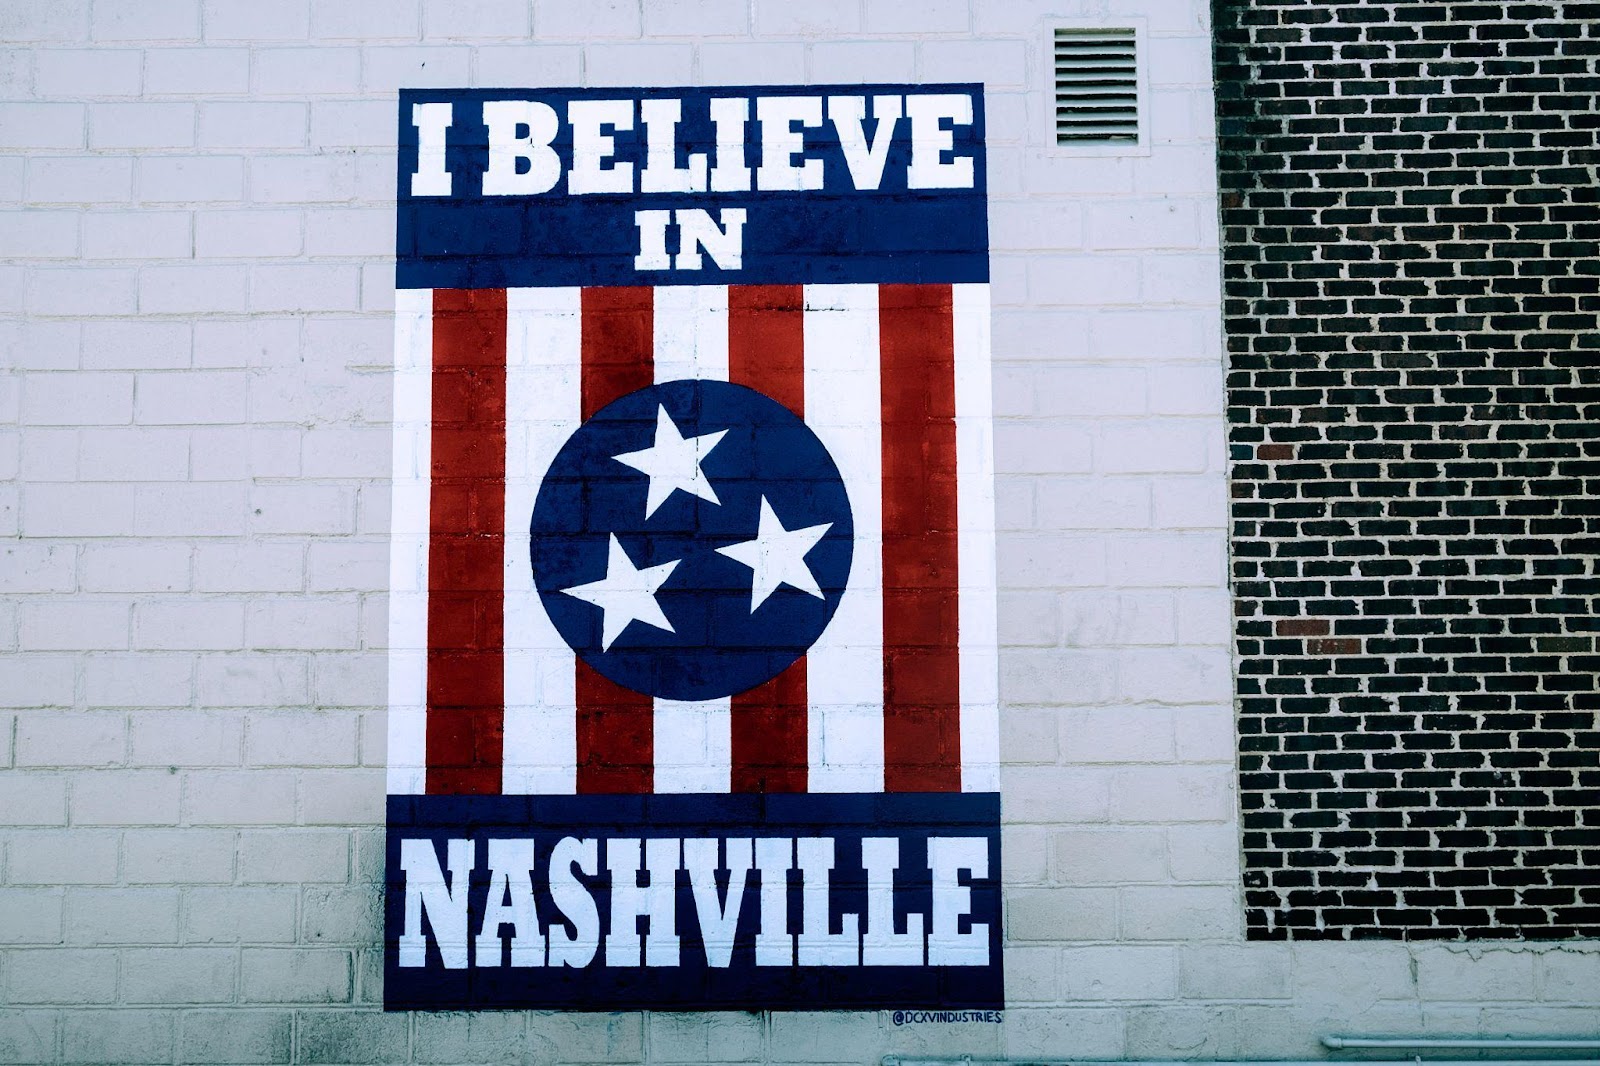 I believe in Nashville sign